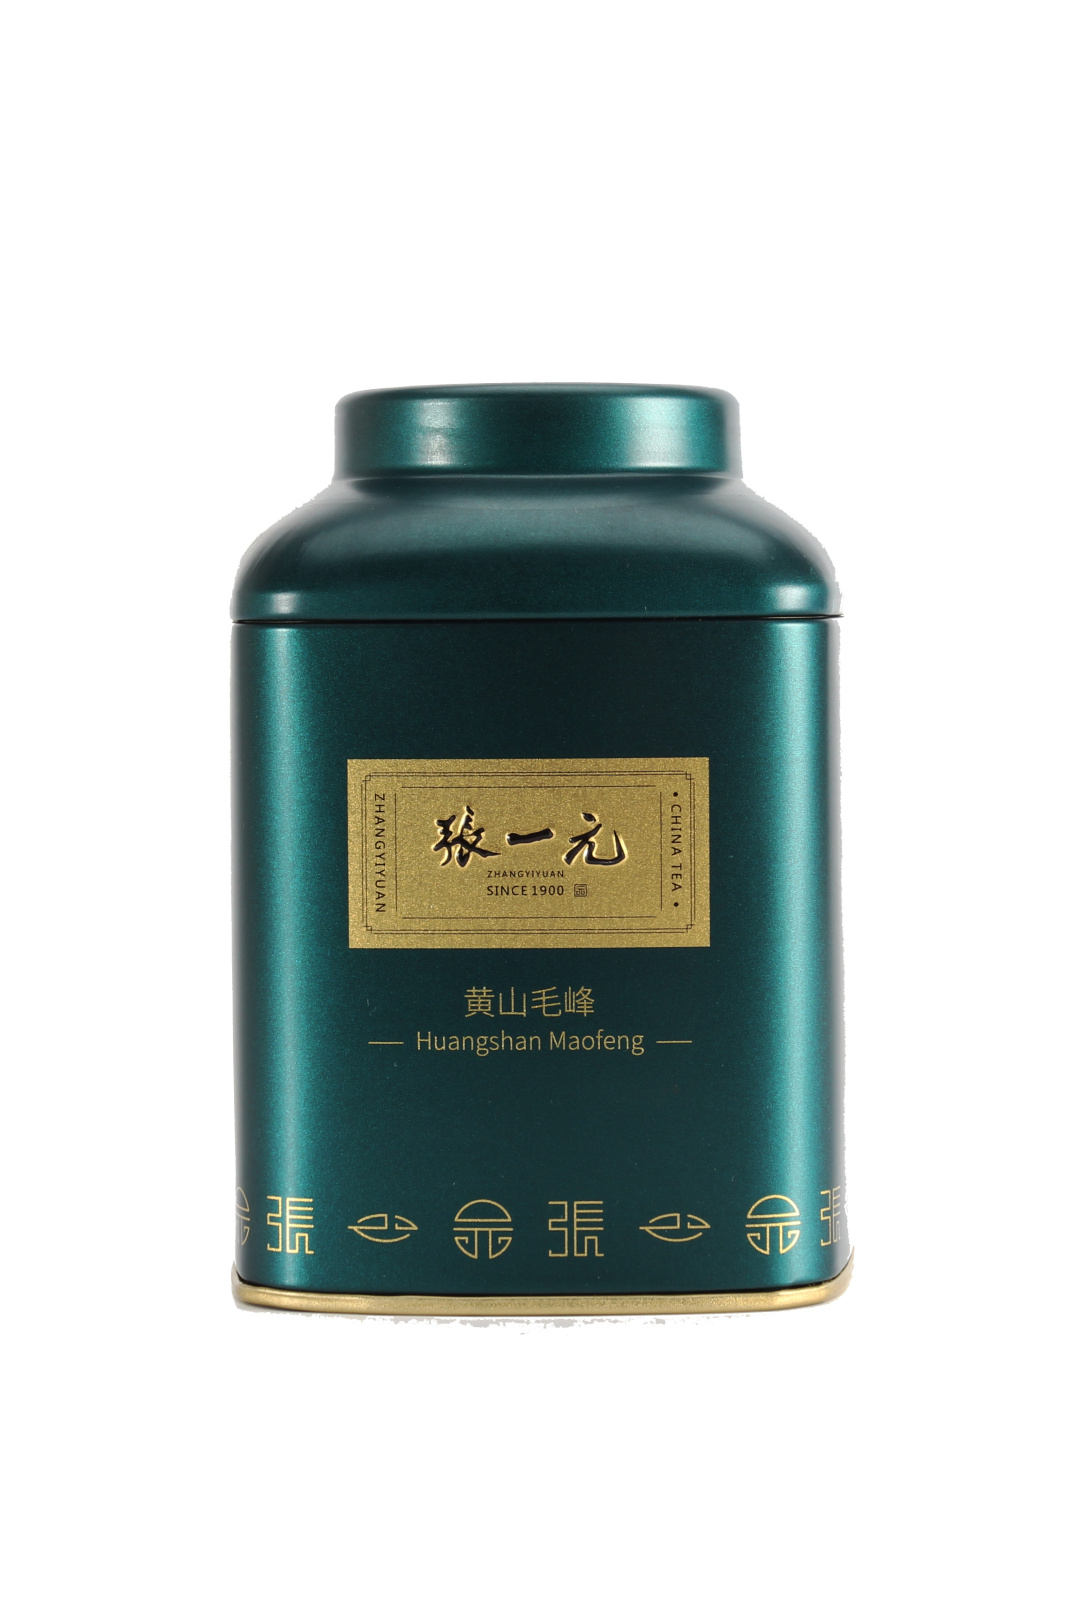 【绿茶展卖季 包邮】张一元茶叶 经典系列 绿茶 黄山毛峰 桶装 40g